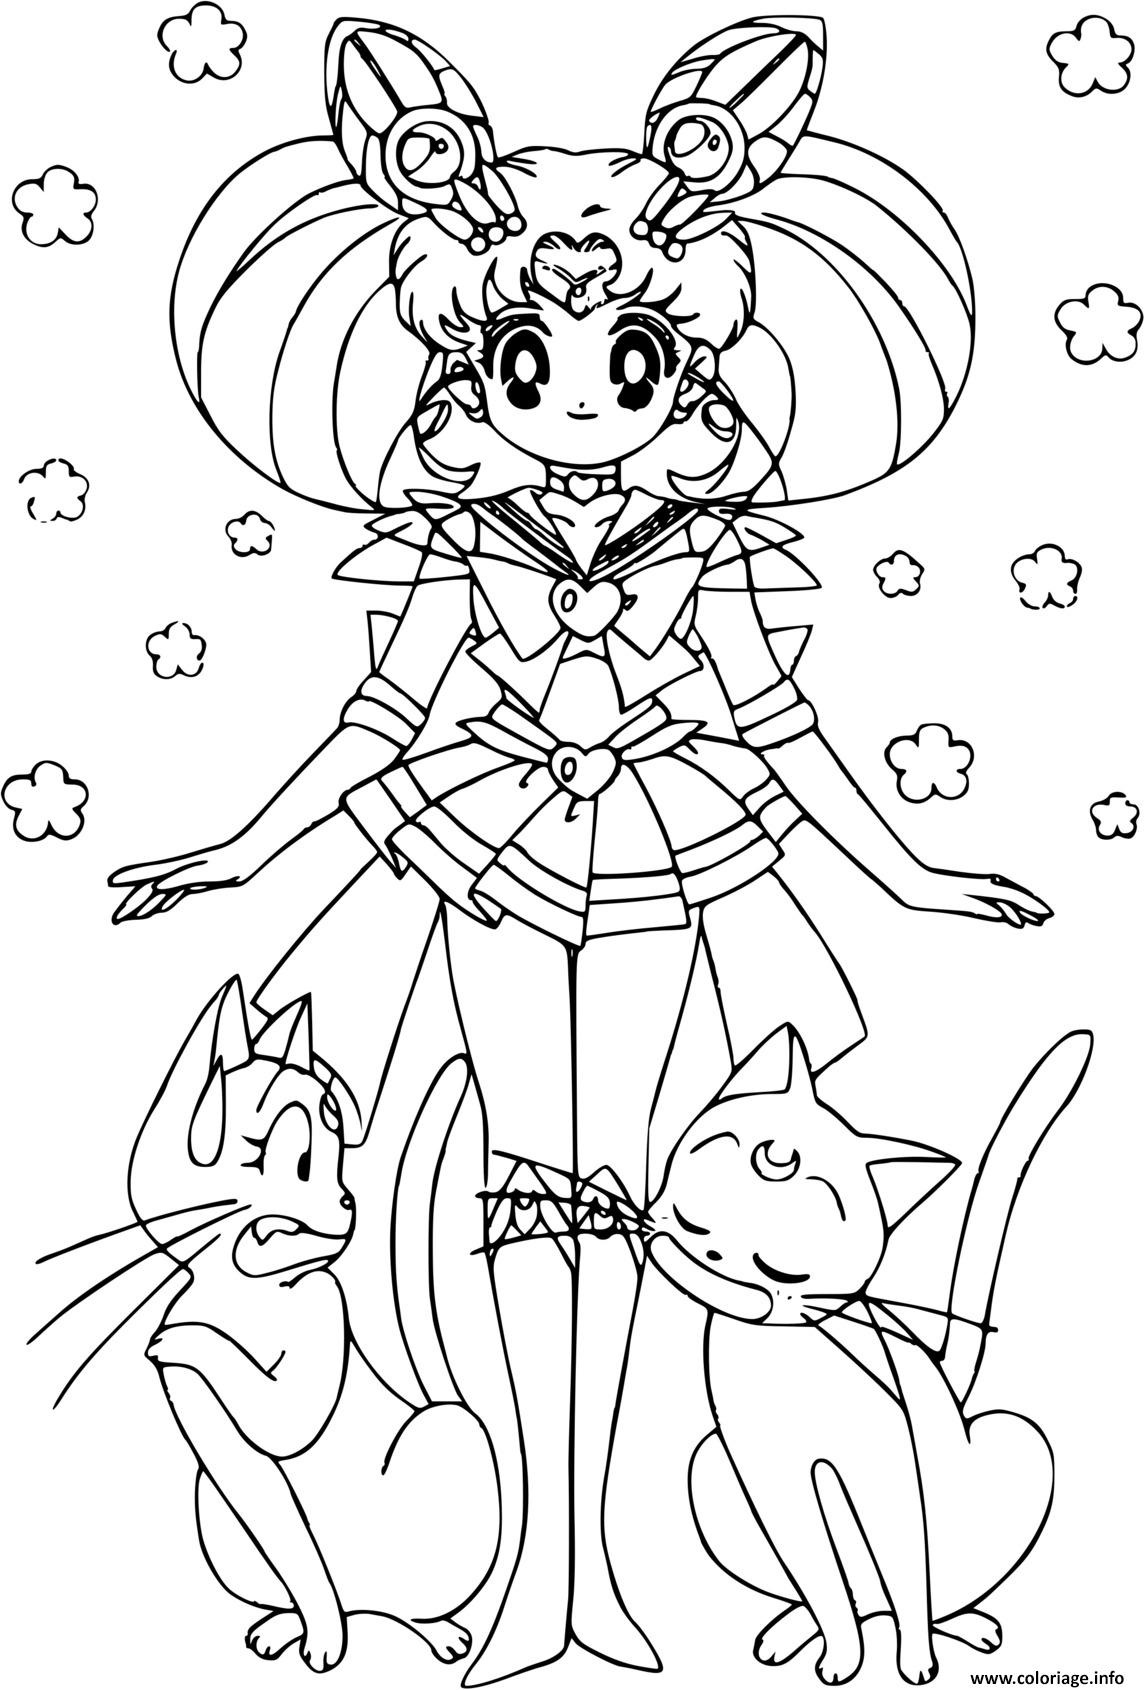 Dessin Sailor Moon and cats Coloriage Gratuit à Imprimer